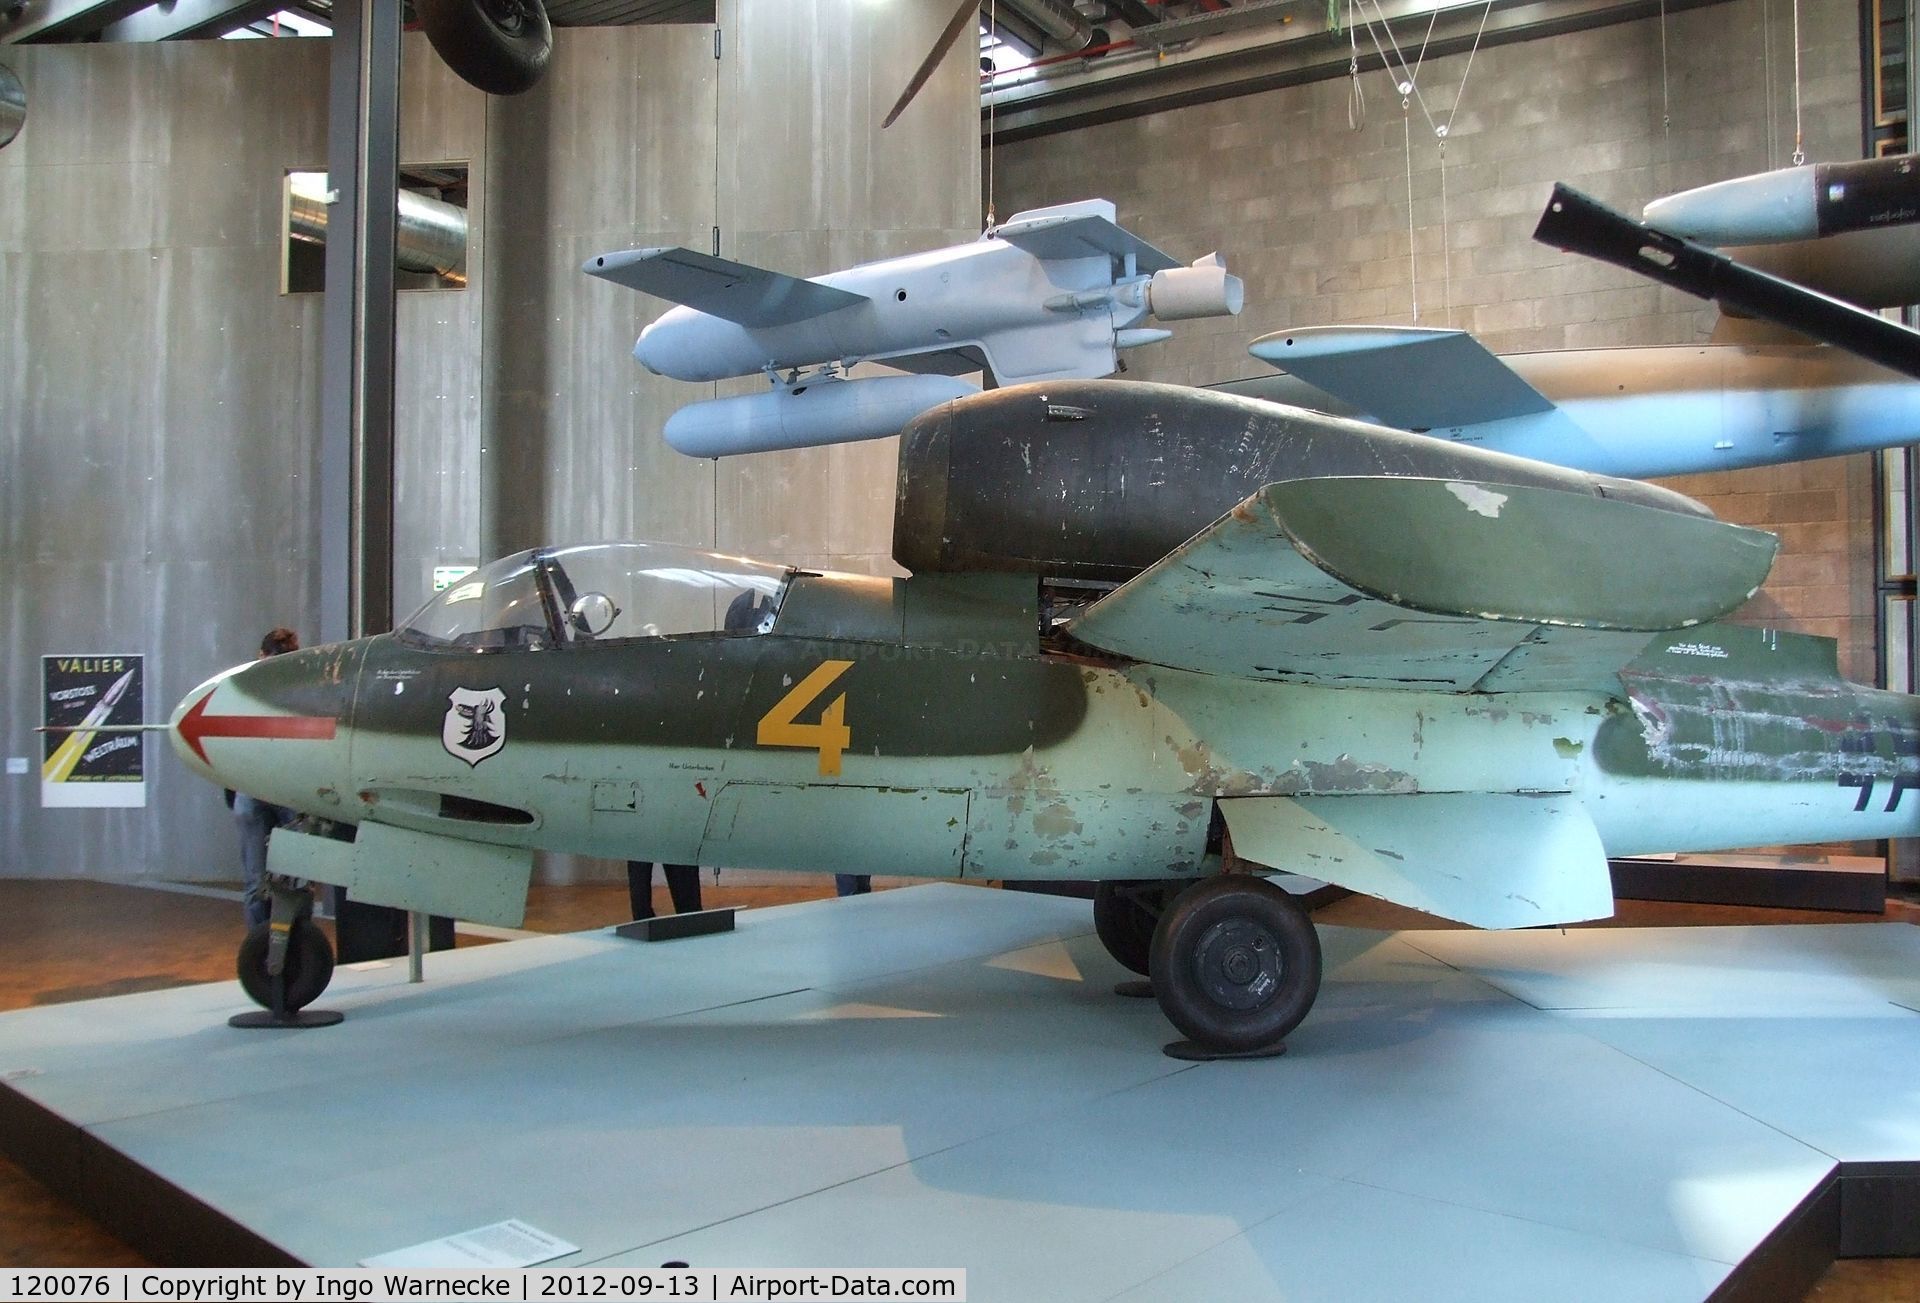 120076, Heinkel He-162A-2 Volksjager C/N 120076, Heinkel He 162A-2 'Spatz'/'Salamander'/'Volksjäger' at the DTM (Deutsches Technikmuseum), Berlin